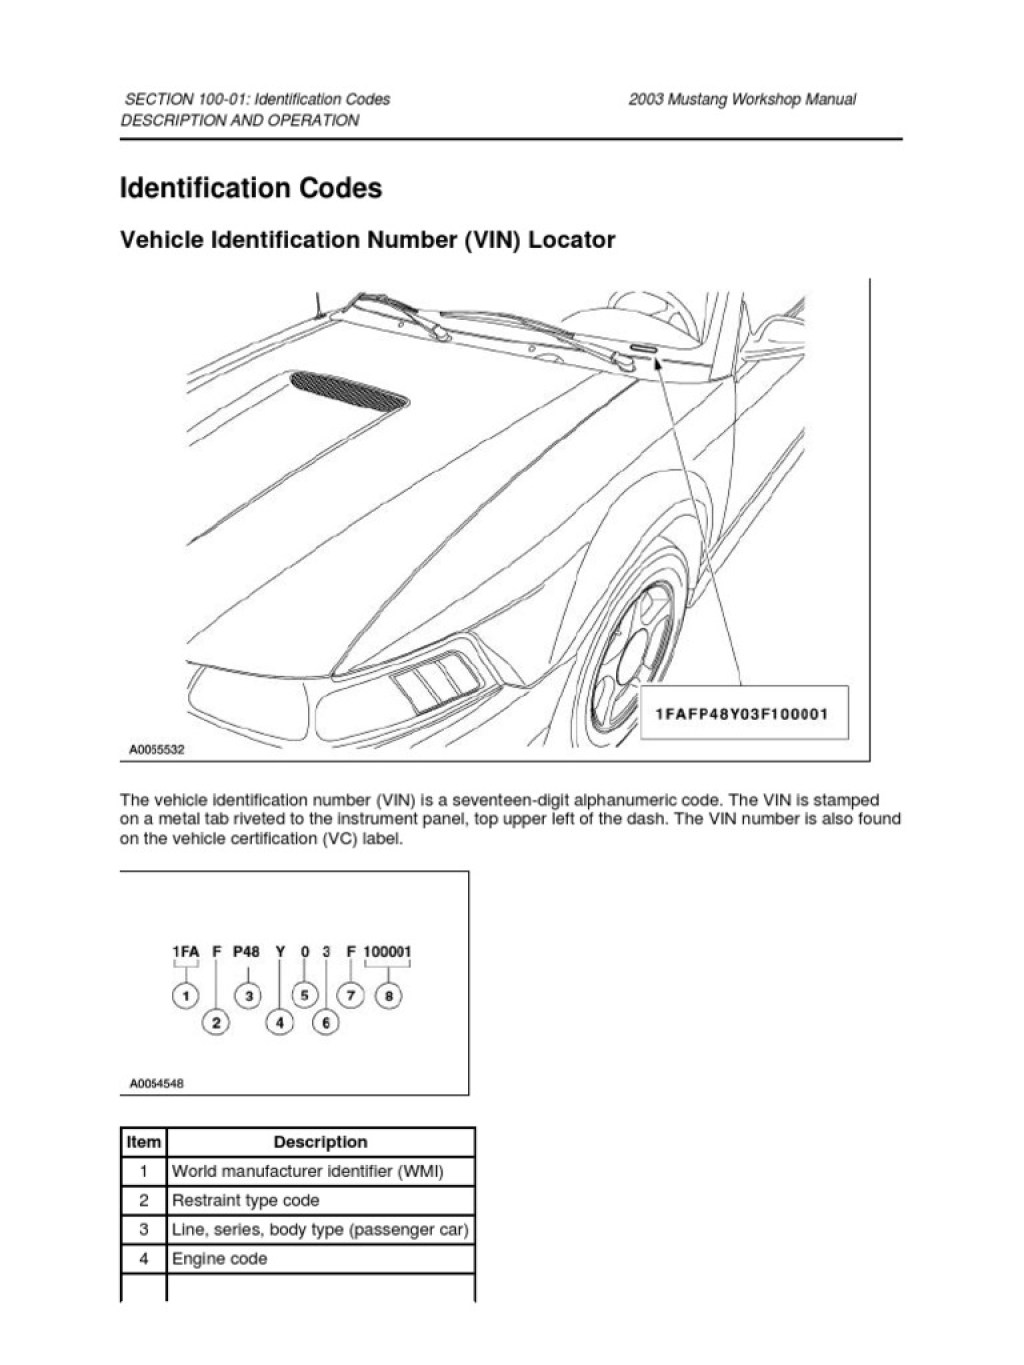 Picture of: Mustang Master Service Manual  PDF  Brake  Manual Transmission